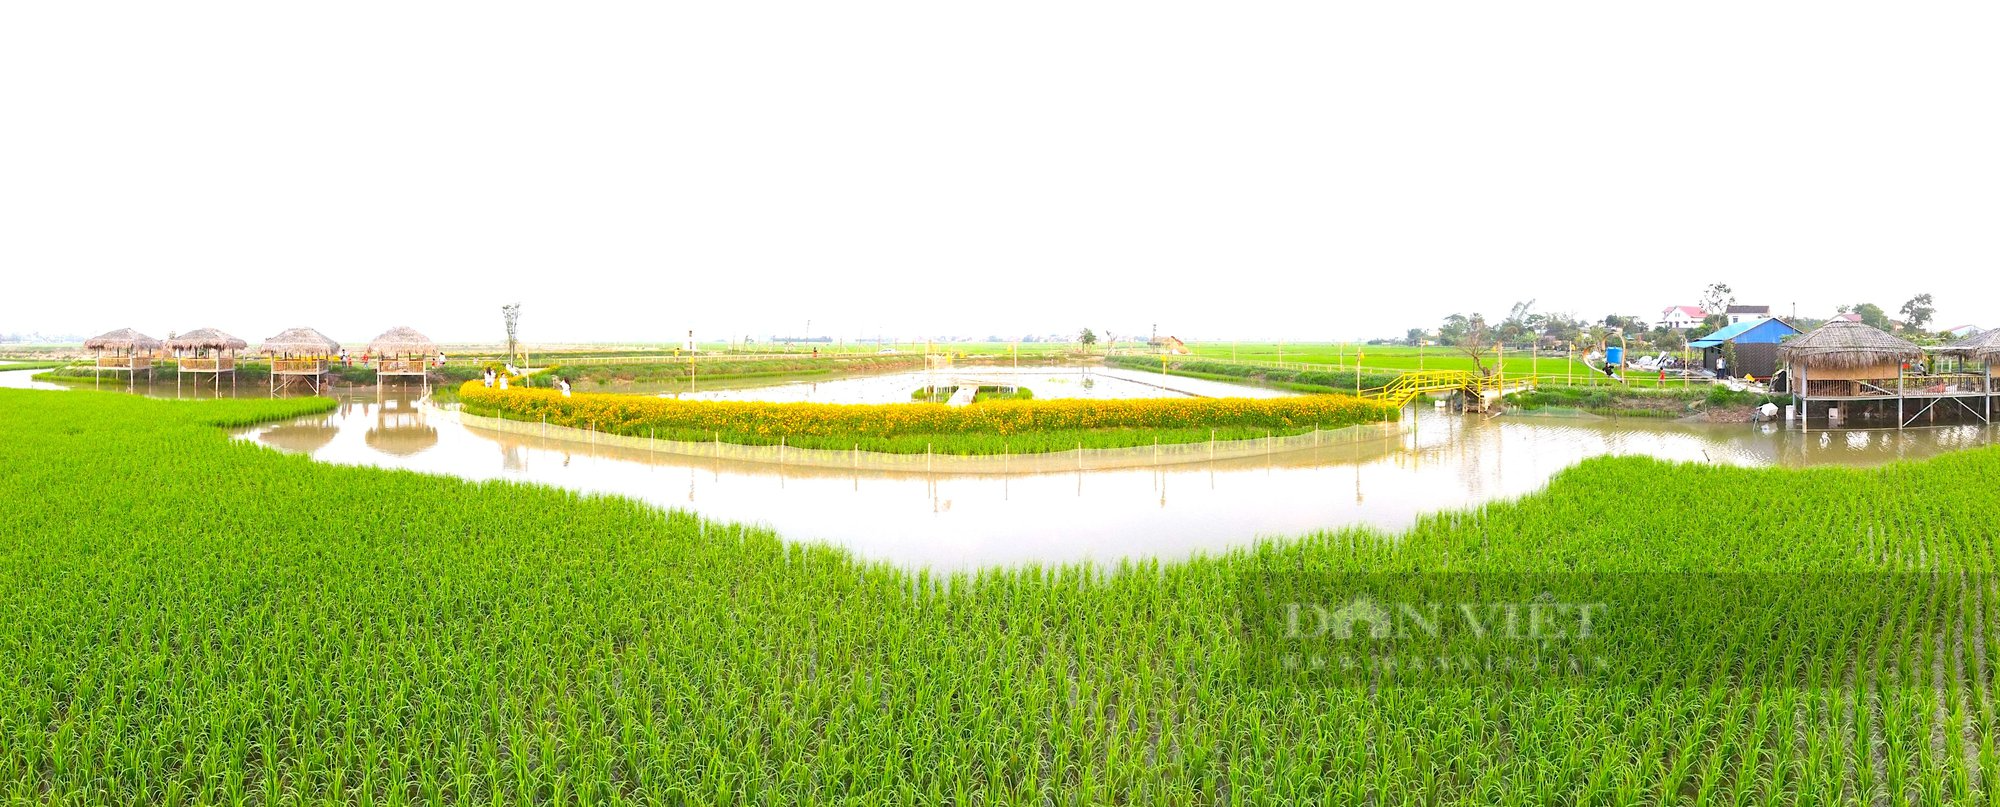 Hà Tĩnh: Mô hình nông nghiệp tuần hoàn “3 trong 1”, lợi nhuận hàng trăm triệu đồng mỗi năm - Ảnh 4.